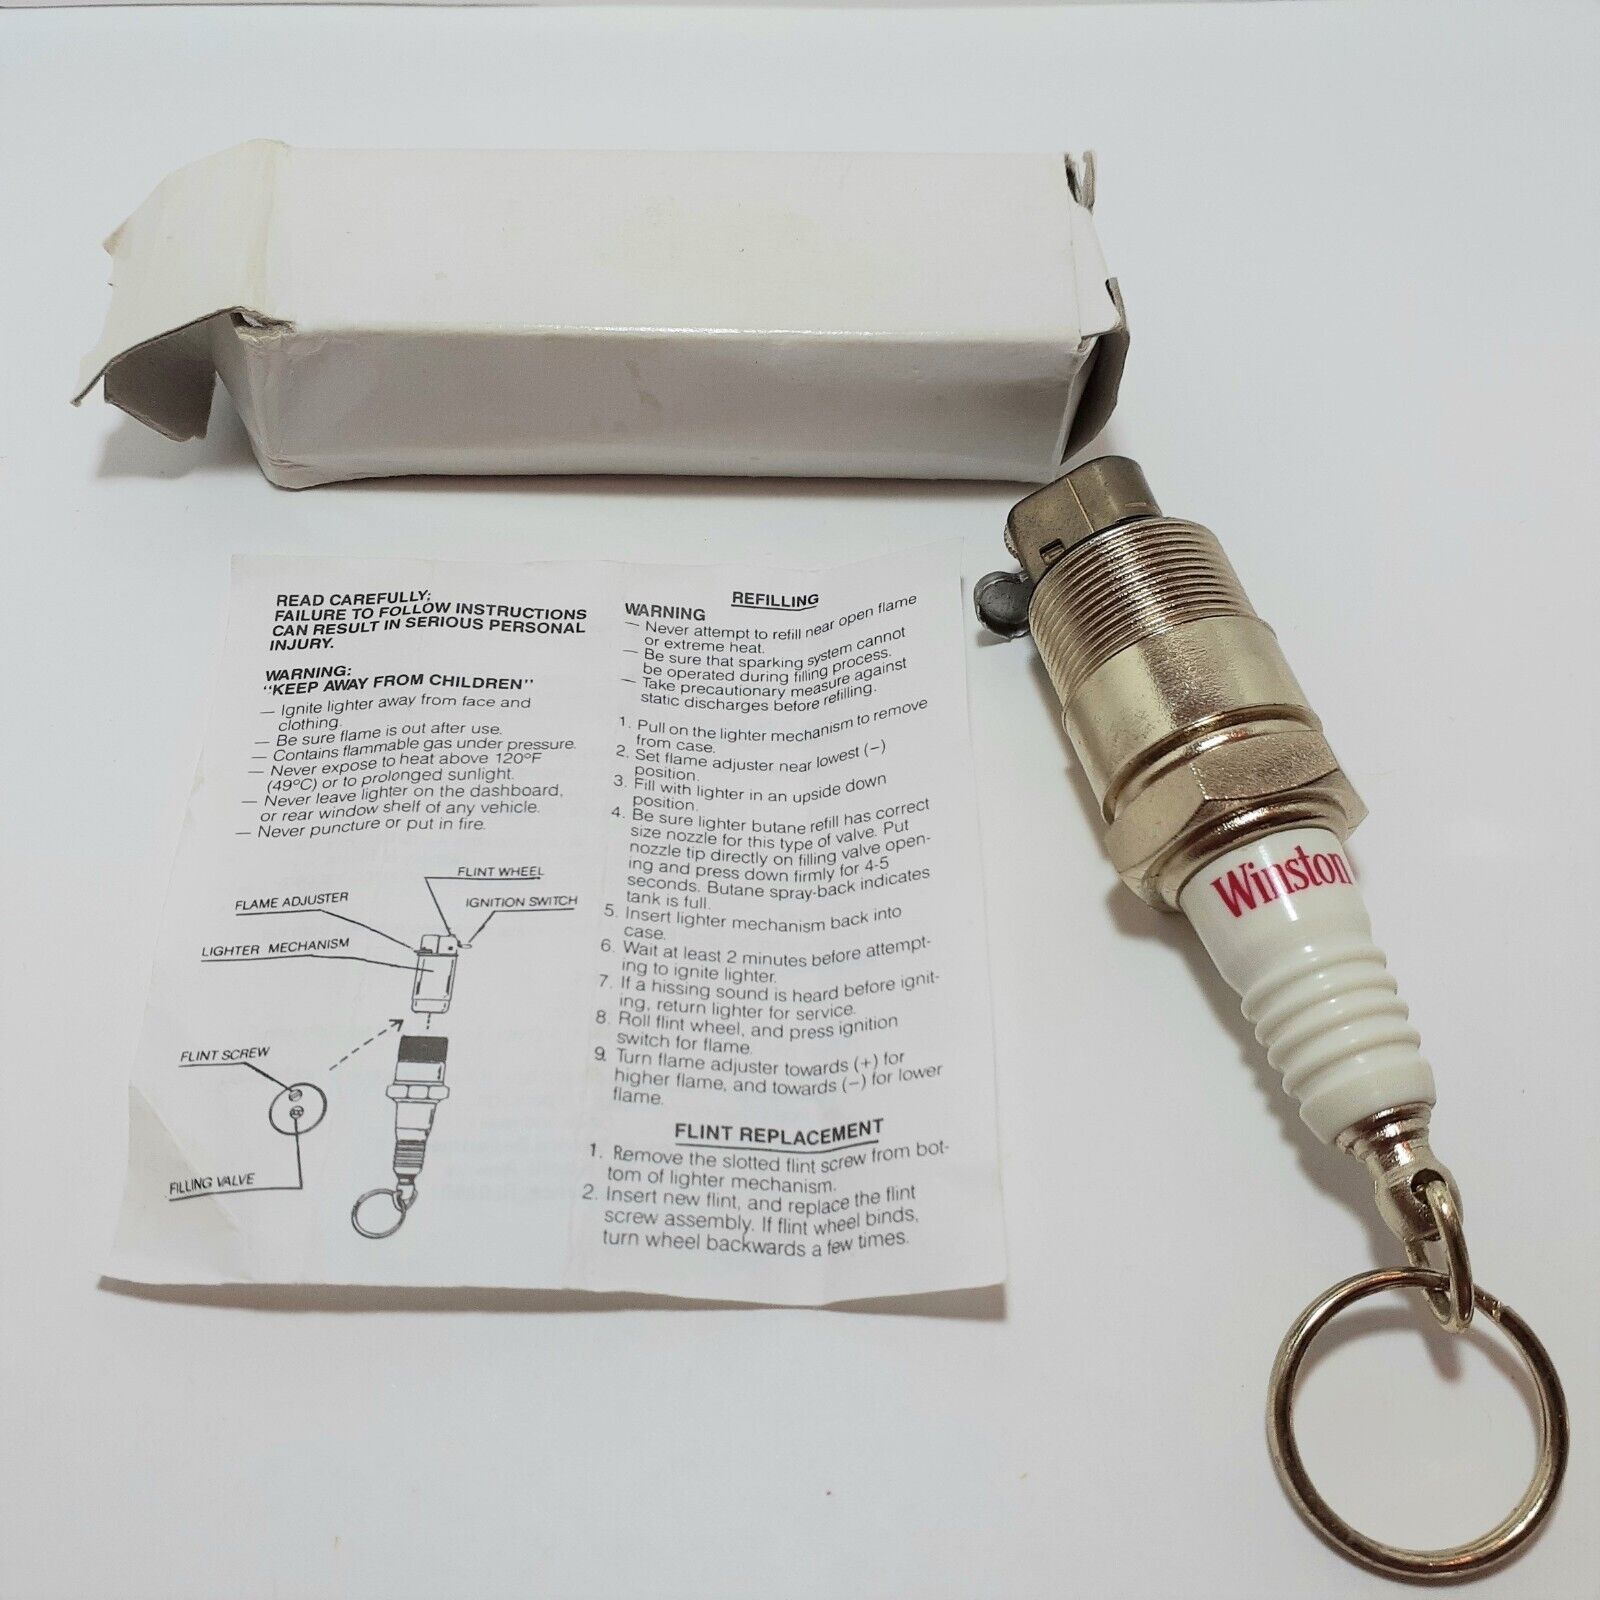 1990s Winston Spark Plug Novelty Keychain Butane Lighter VTG. Available Now for 8.00